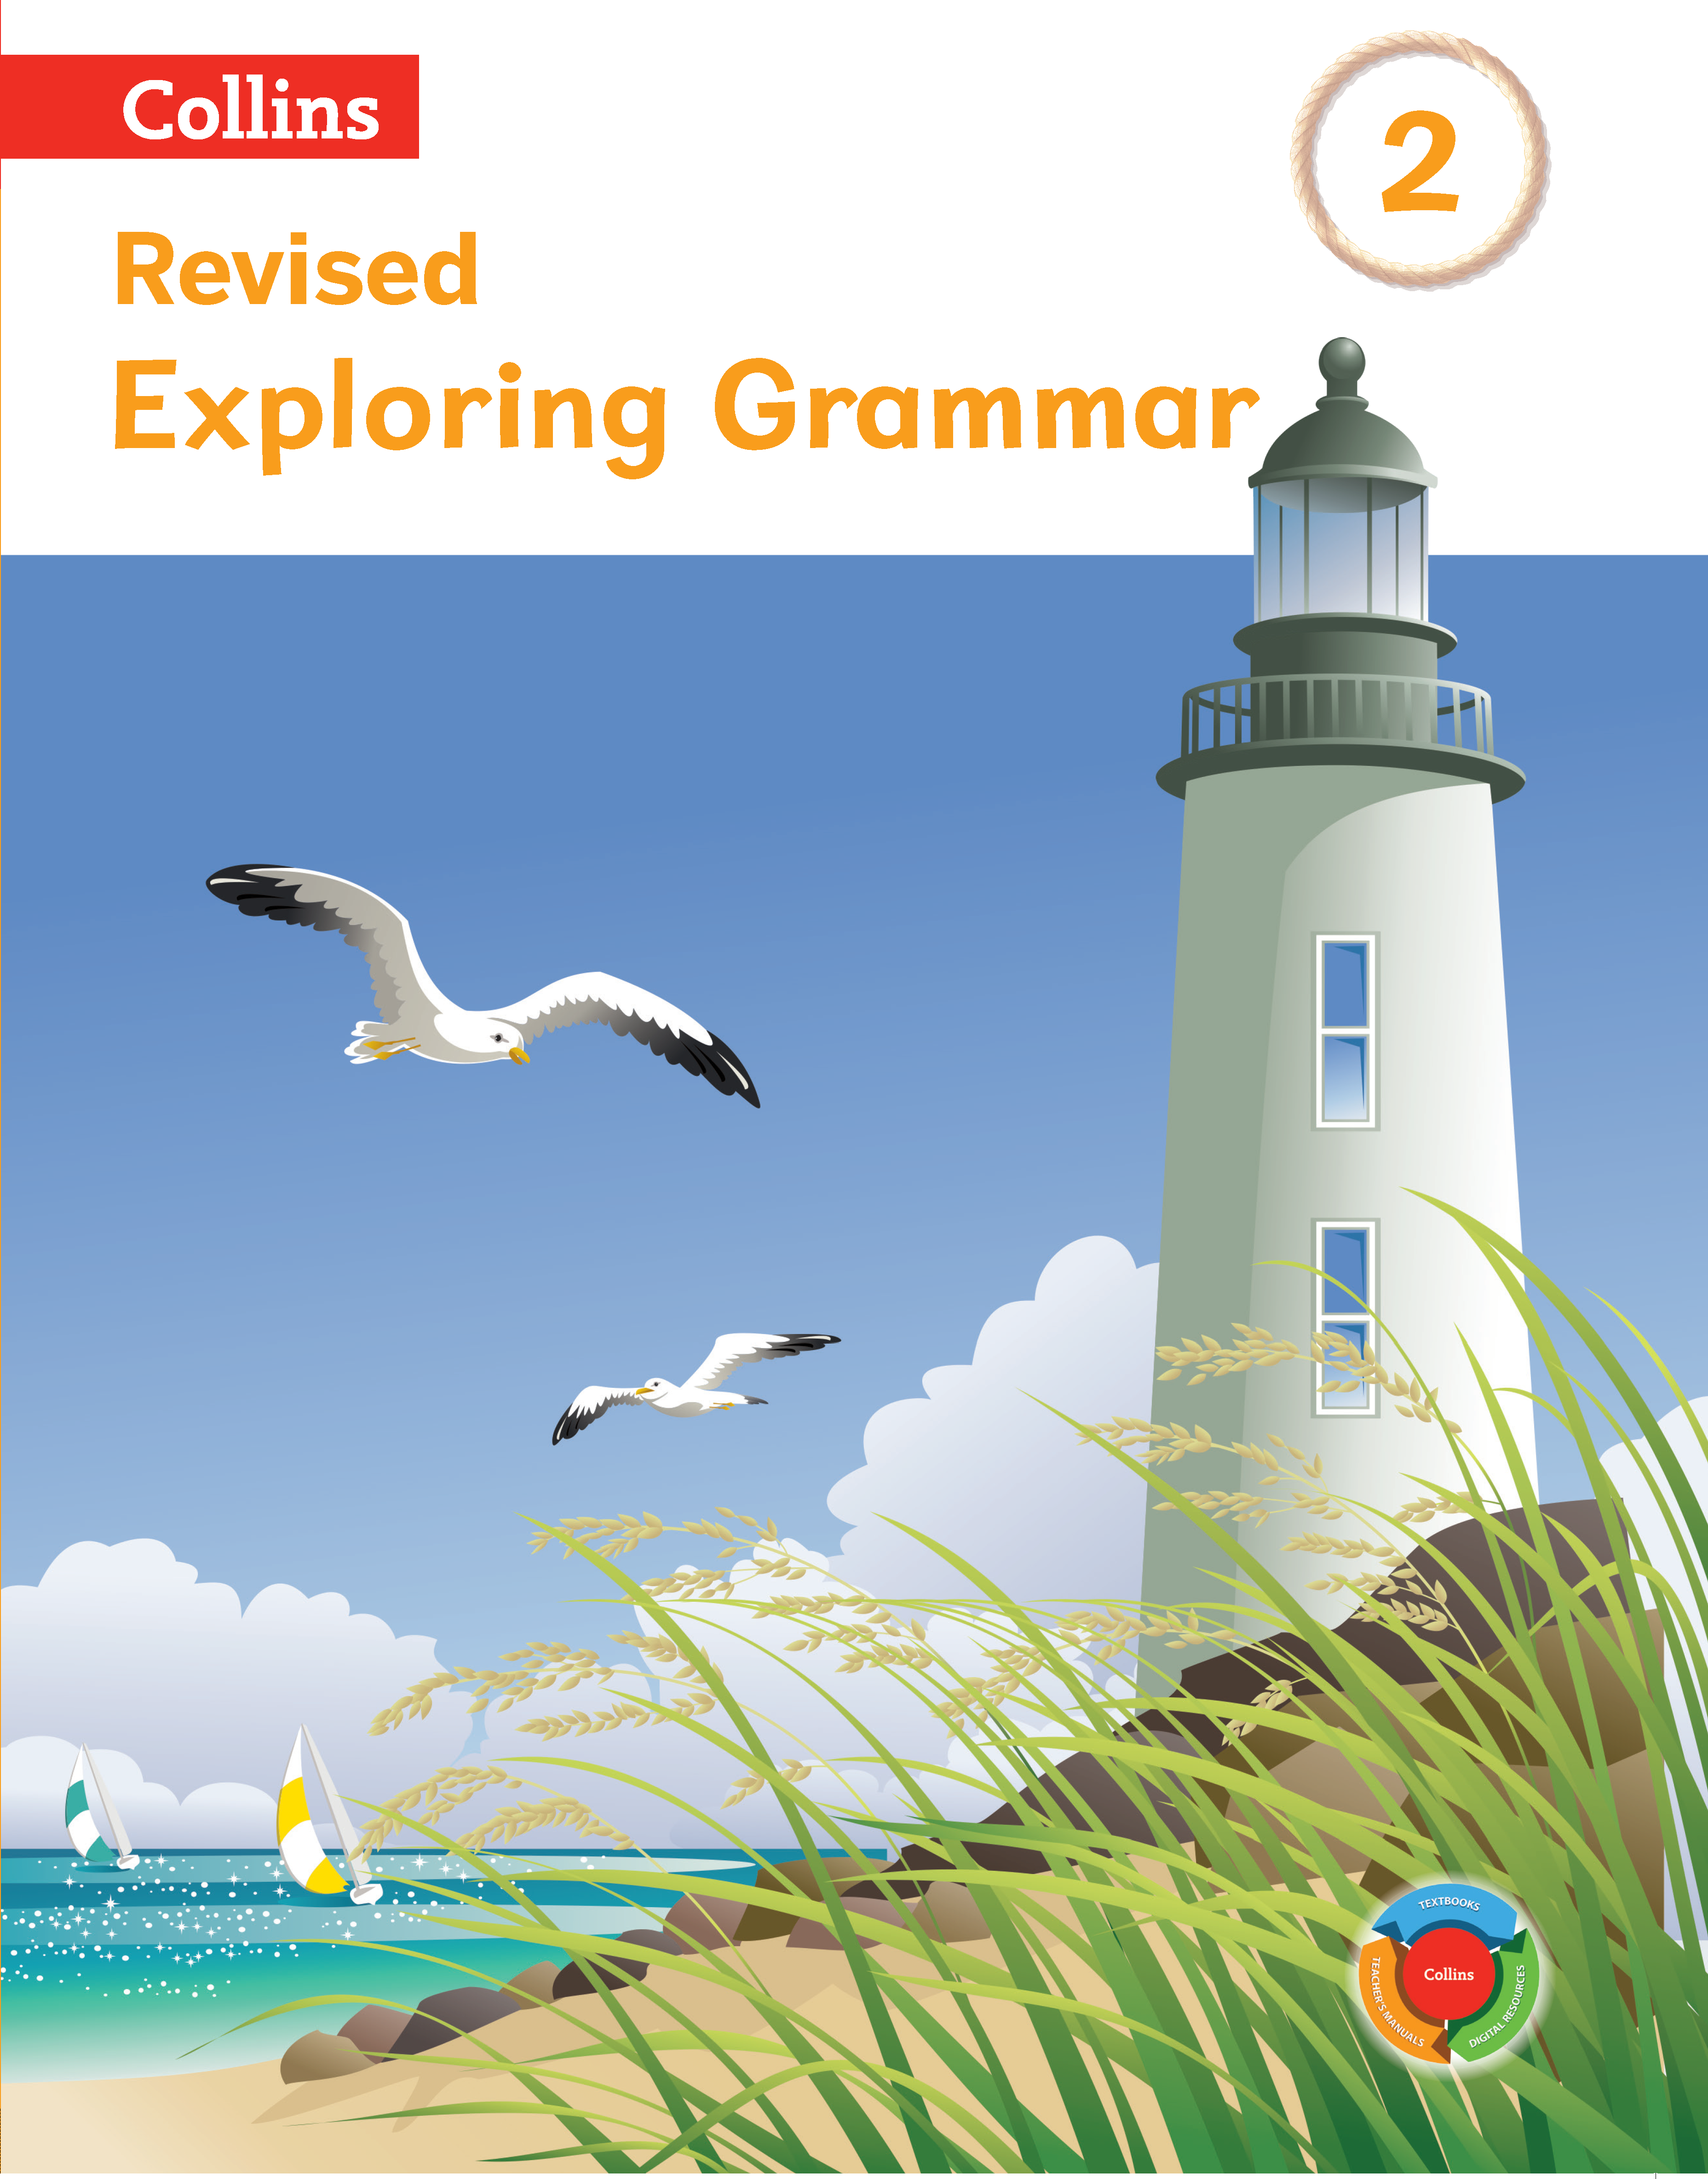 Exploring grammar